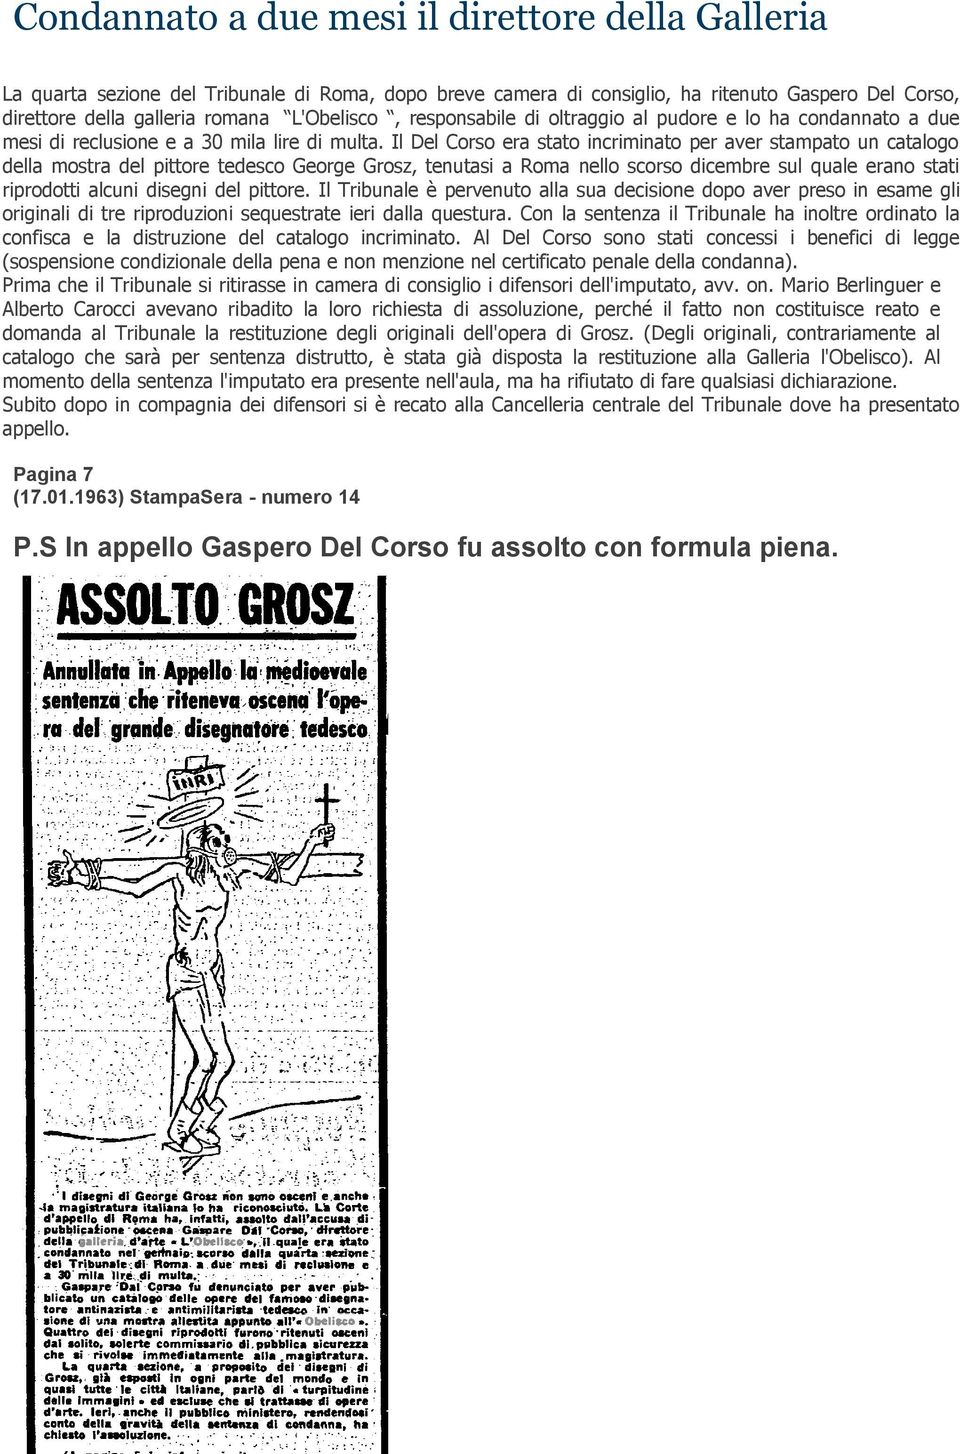 Il Del Corso era stato incriminato per aver stampato un catalogo della mostra del pittore tedesco George Grosz, tenutasi a Roma nello scorso dicembre sul quale erano stati riprodotti alcuni disegni